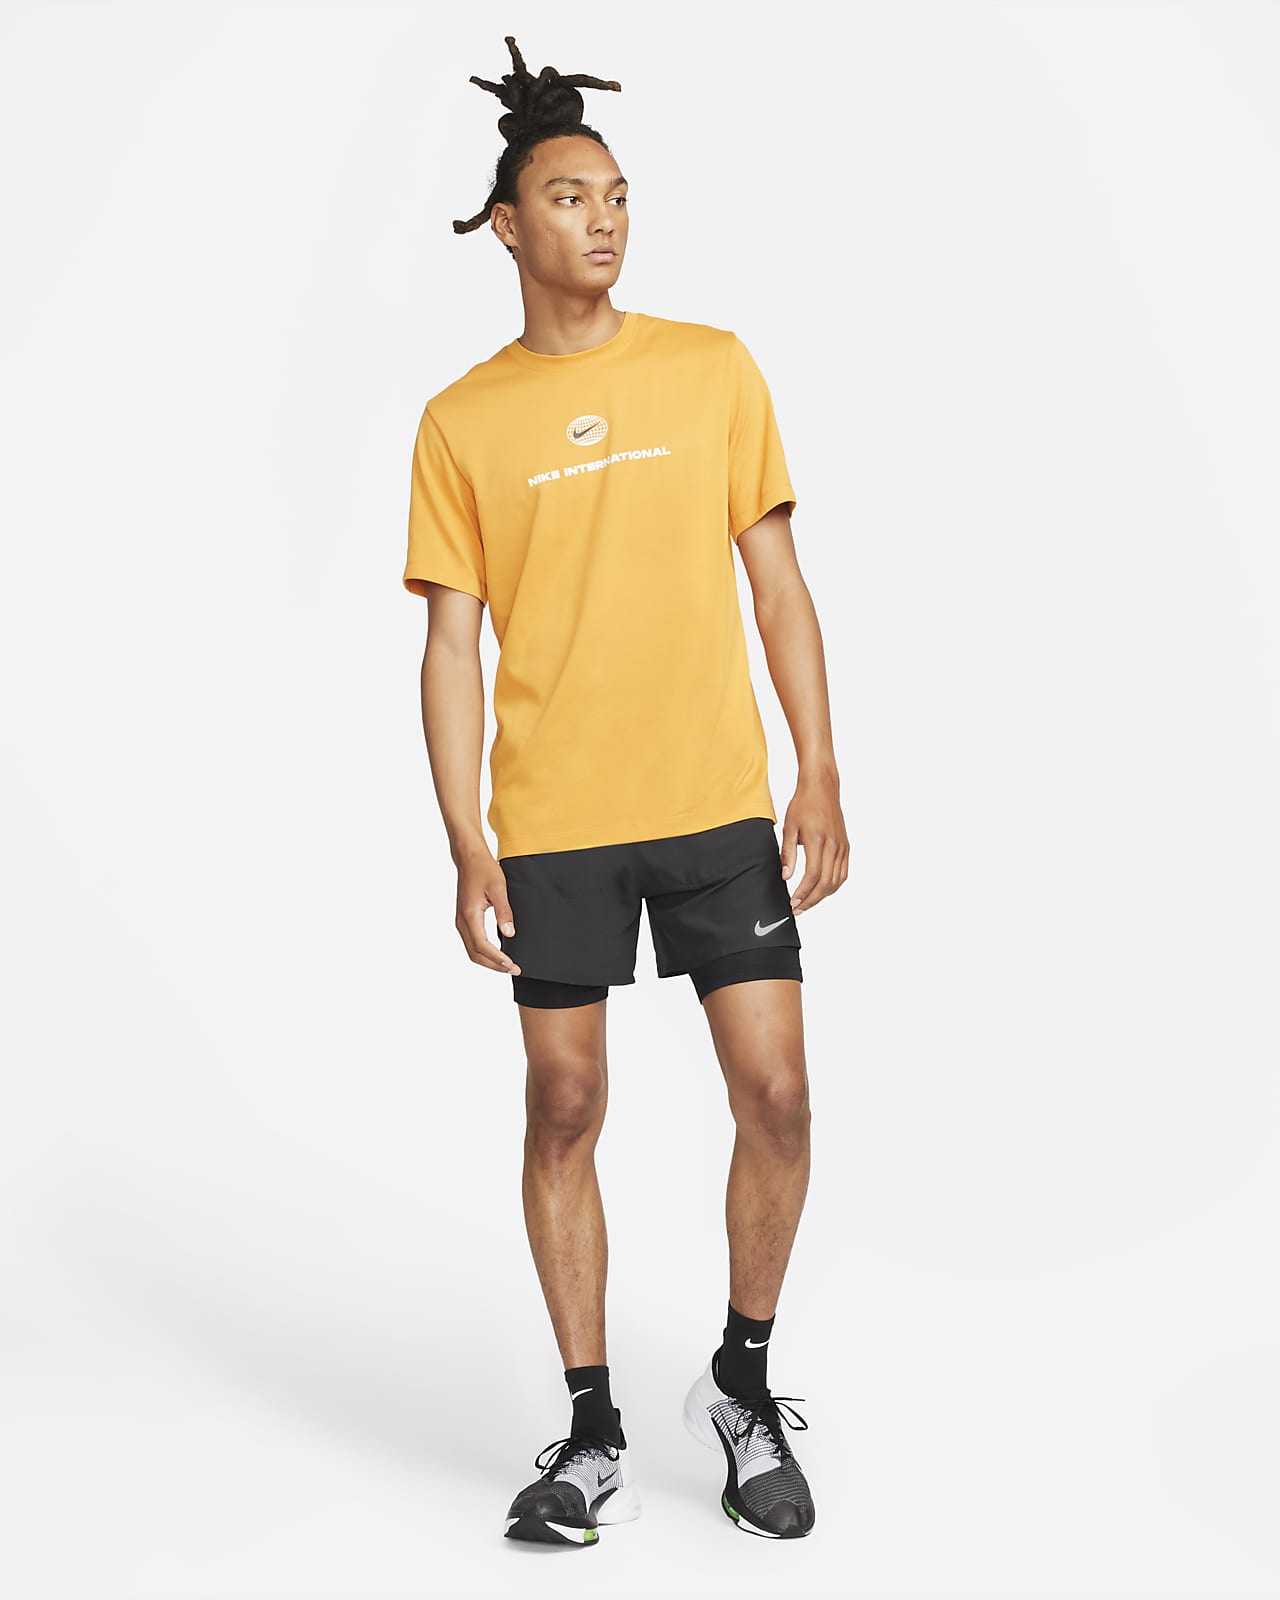 Nike Yoga Men's Dri-FIT 5 Unlined Shorts.